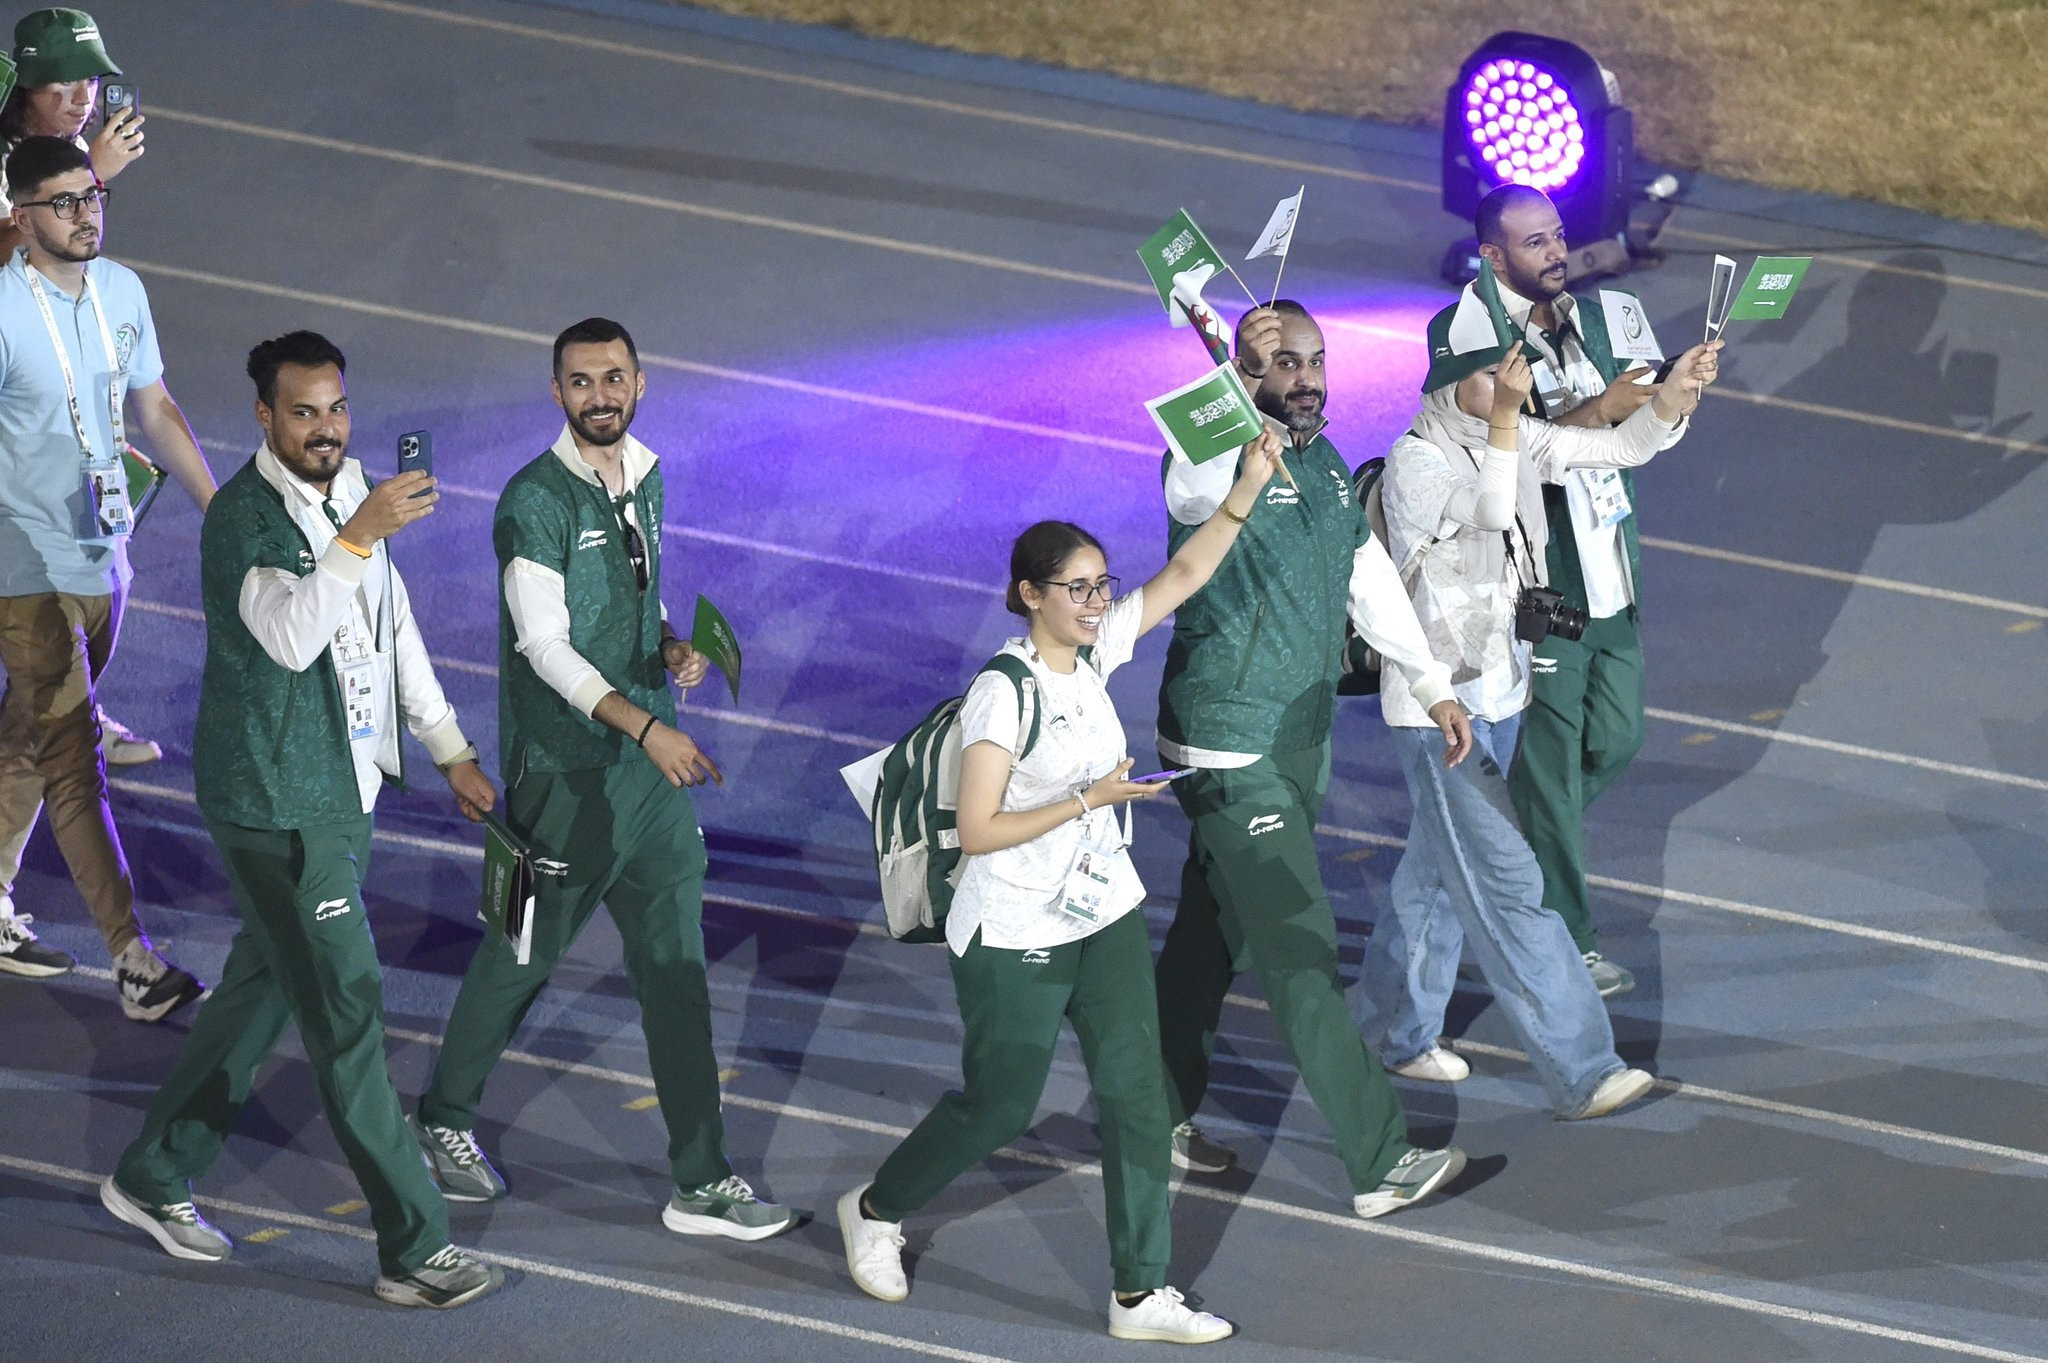 Saudi Arabia won seven golds in a 45-medal haul at the Pan Arab Games in Algeria ©SOPC